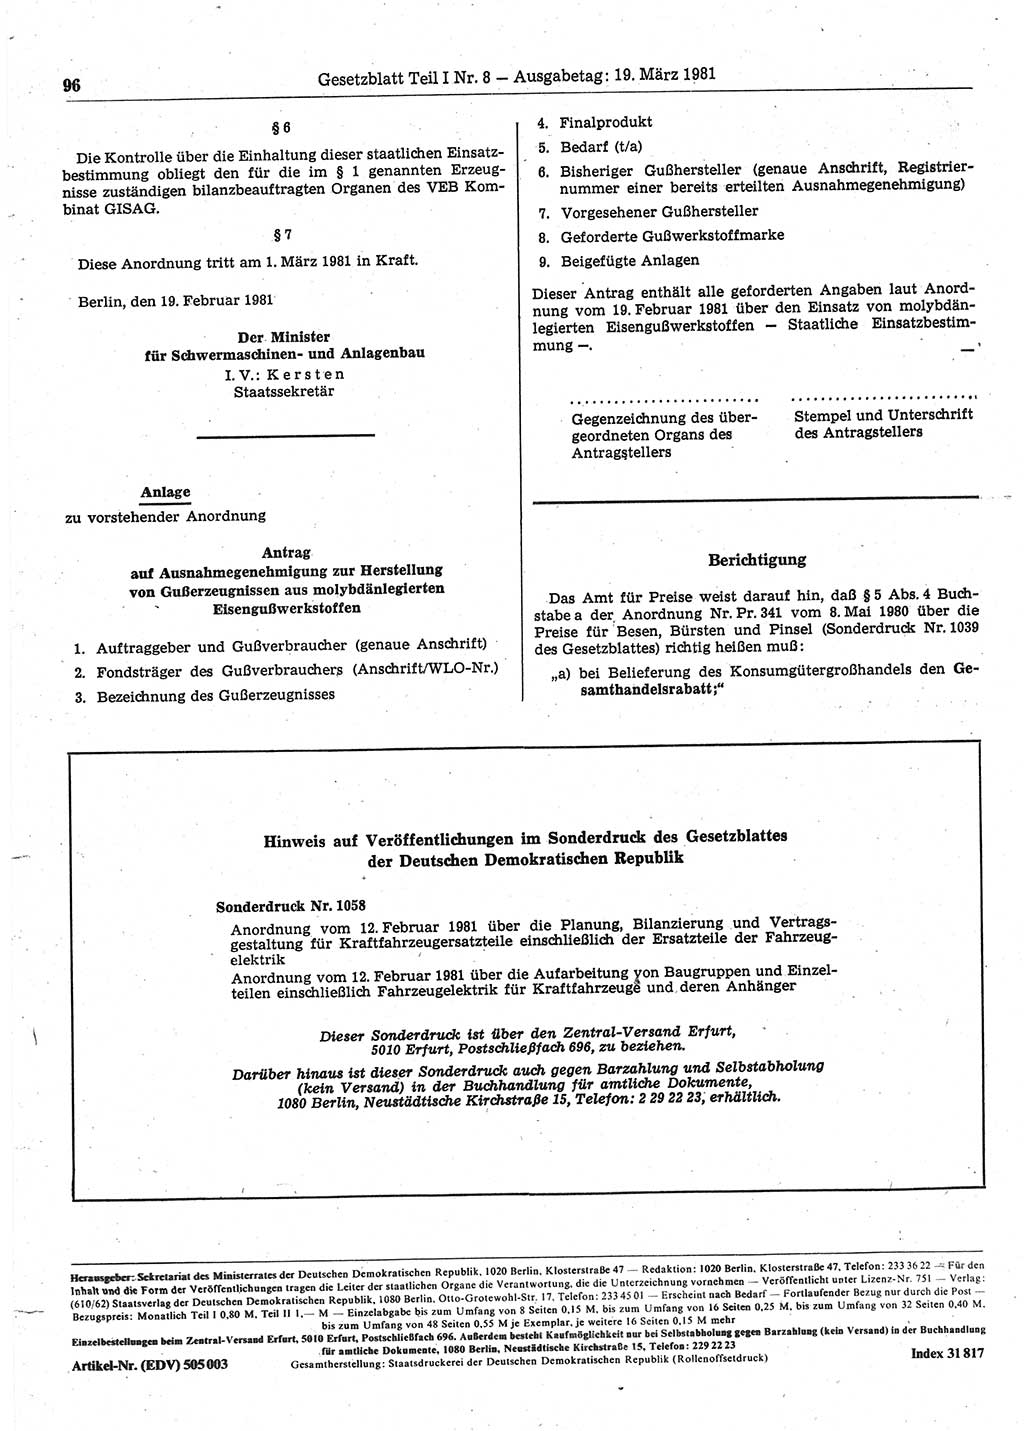 Gesetzblatt (GBl.) der Deutschen Demokratischen Republik (DDR) Teil Ⅰ 1981, Seite 96 (GBl. DDR Ⅰ 1981, S. 96)